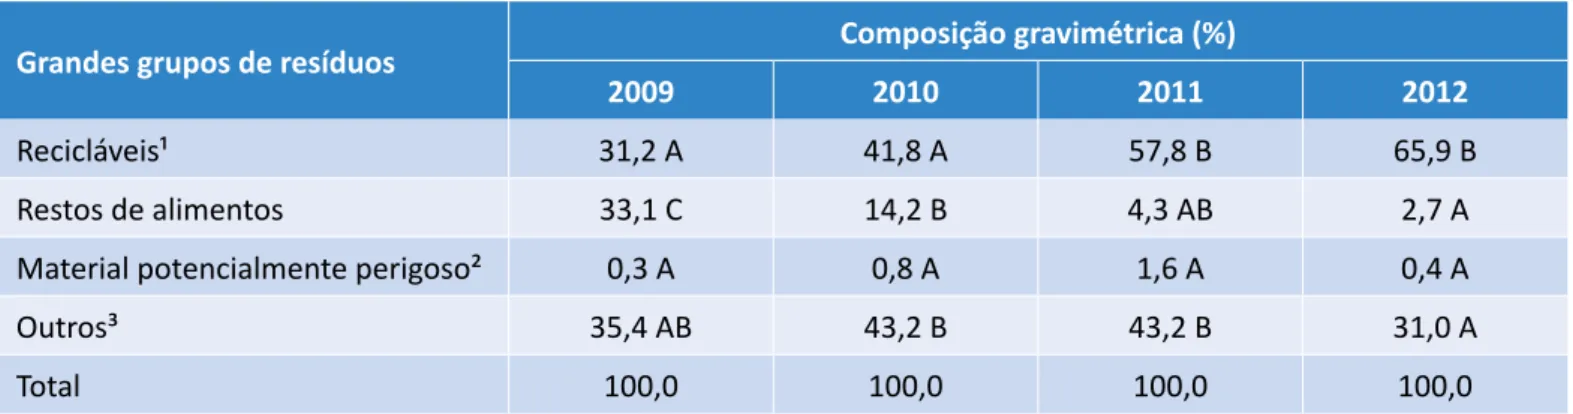 Tabela 6 - Valores médios da composição gravimétrica por grandes grupos dos resíduos sólidos classe II 